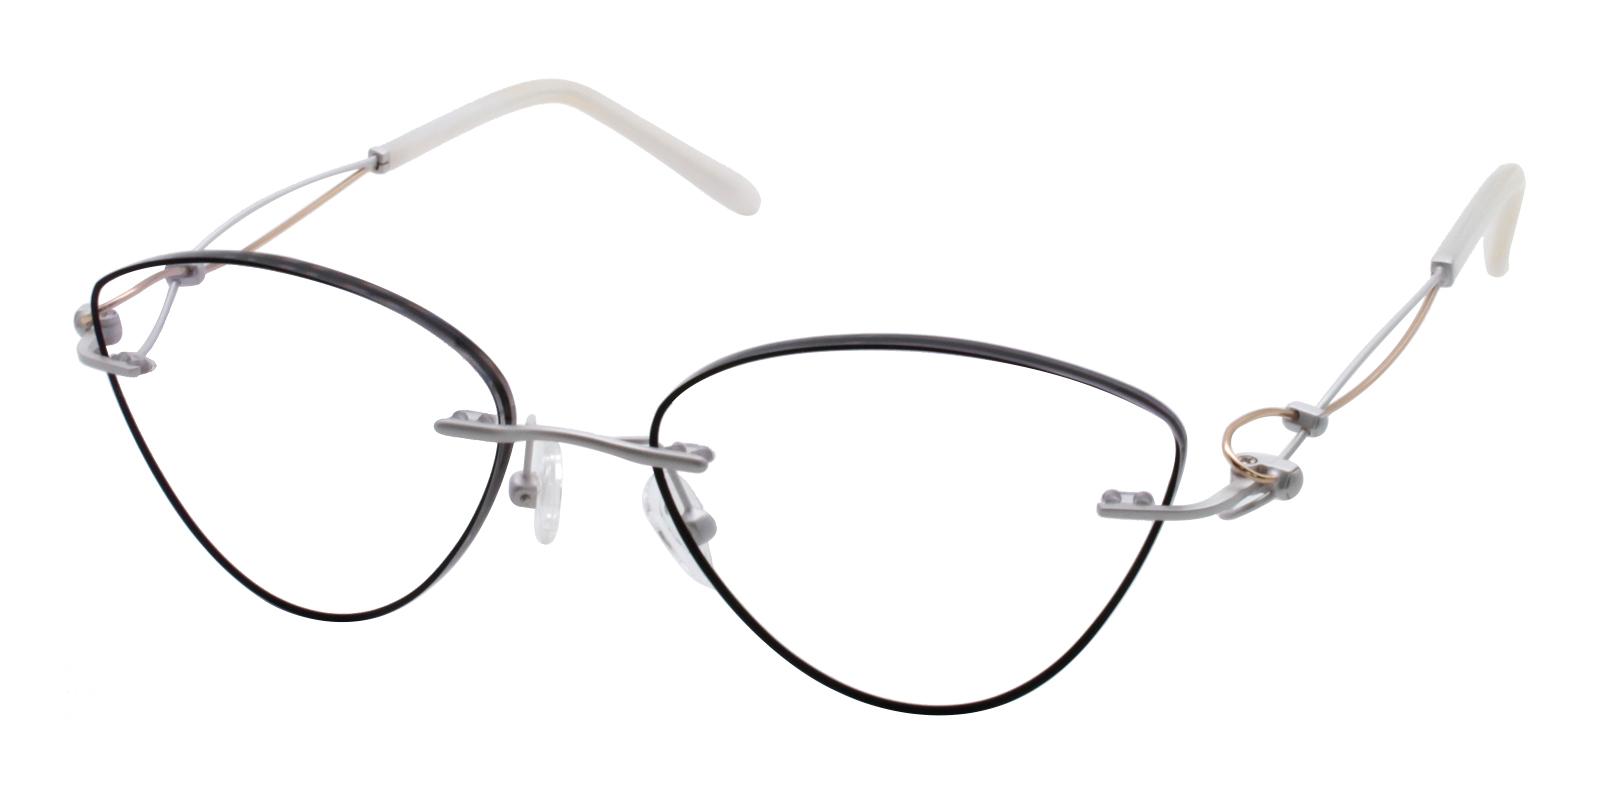 Kaylee Black Titanium Eyeglasses , NosePads Frames from ABBE Glasses